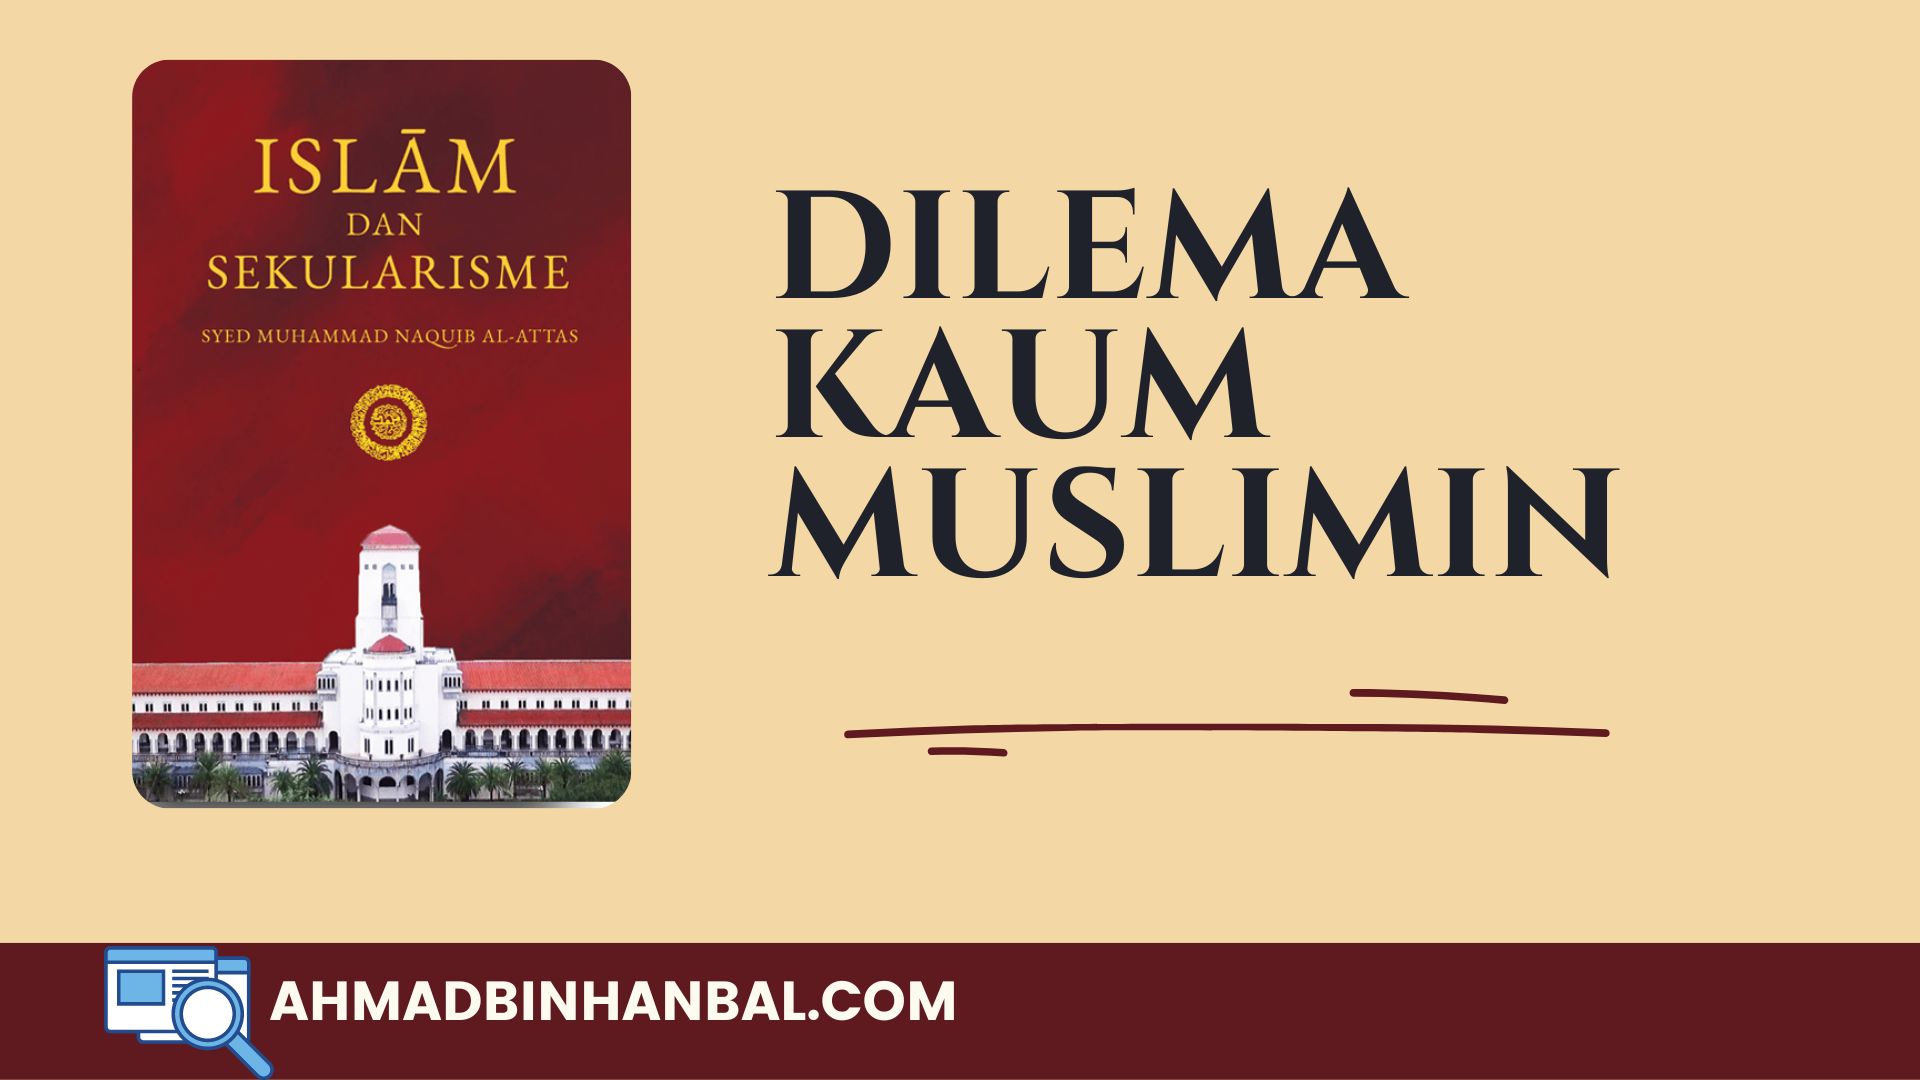 Dilema kaum muslimin - ahmadbinhanbal.com